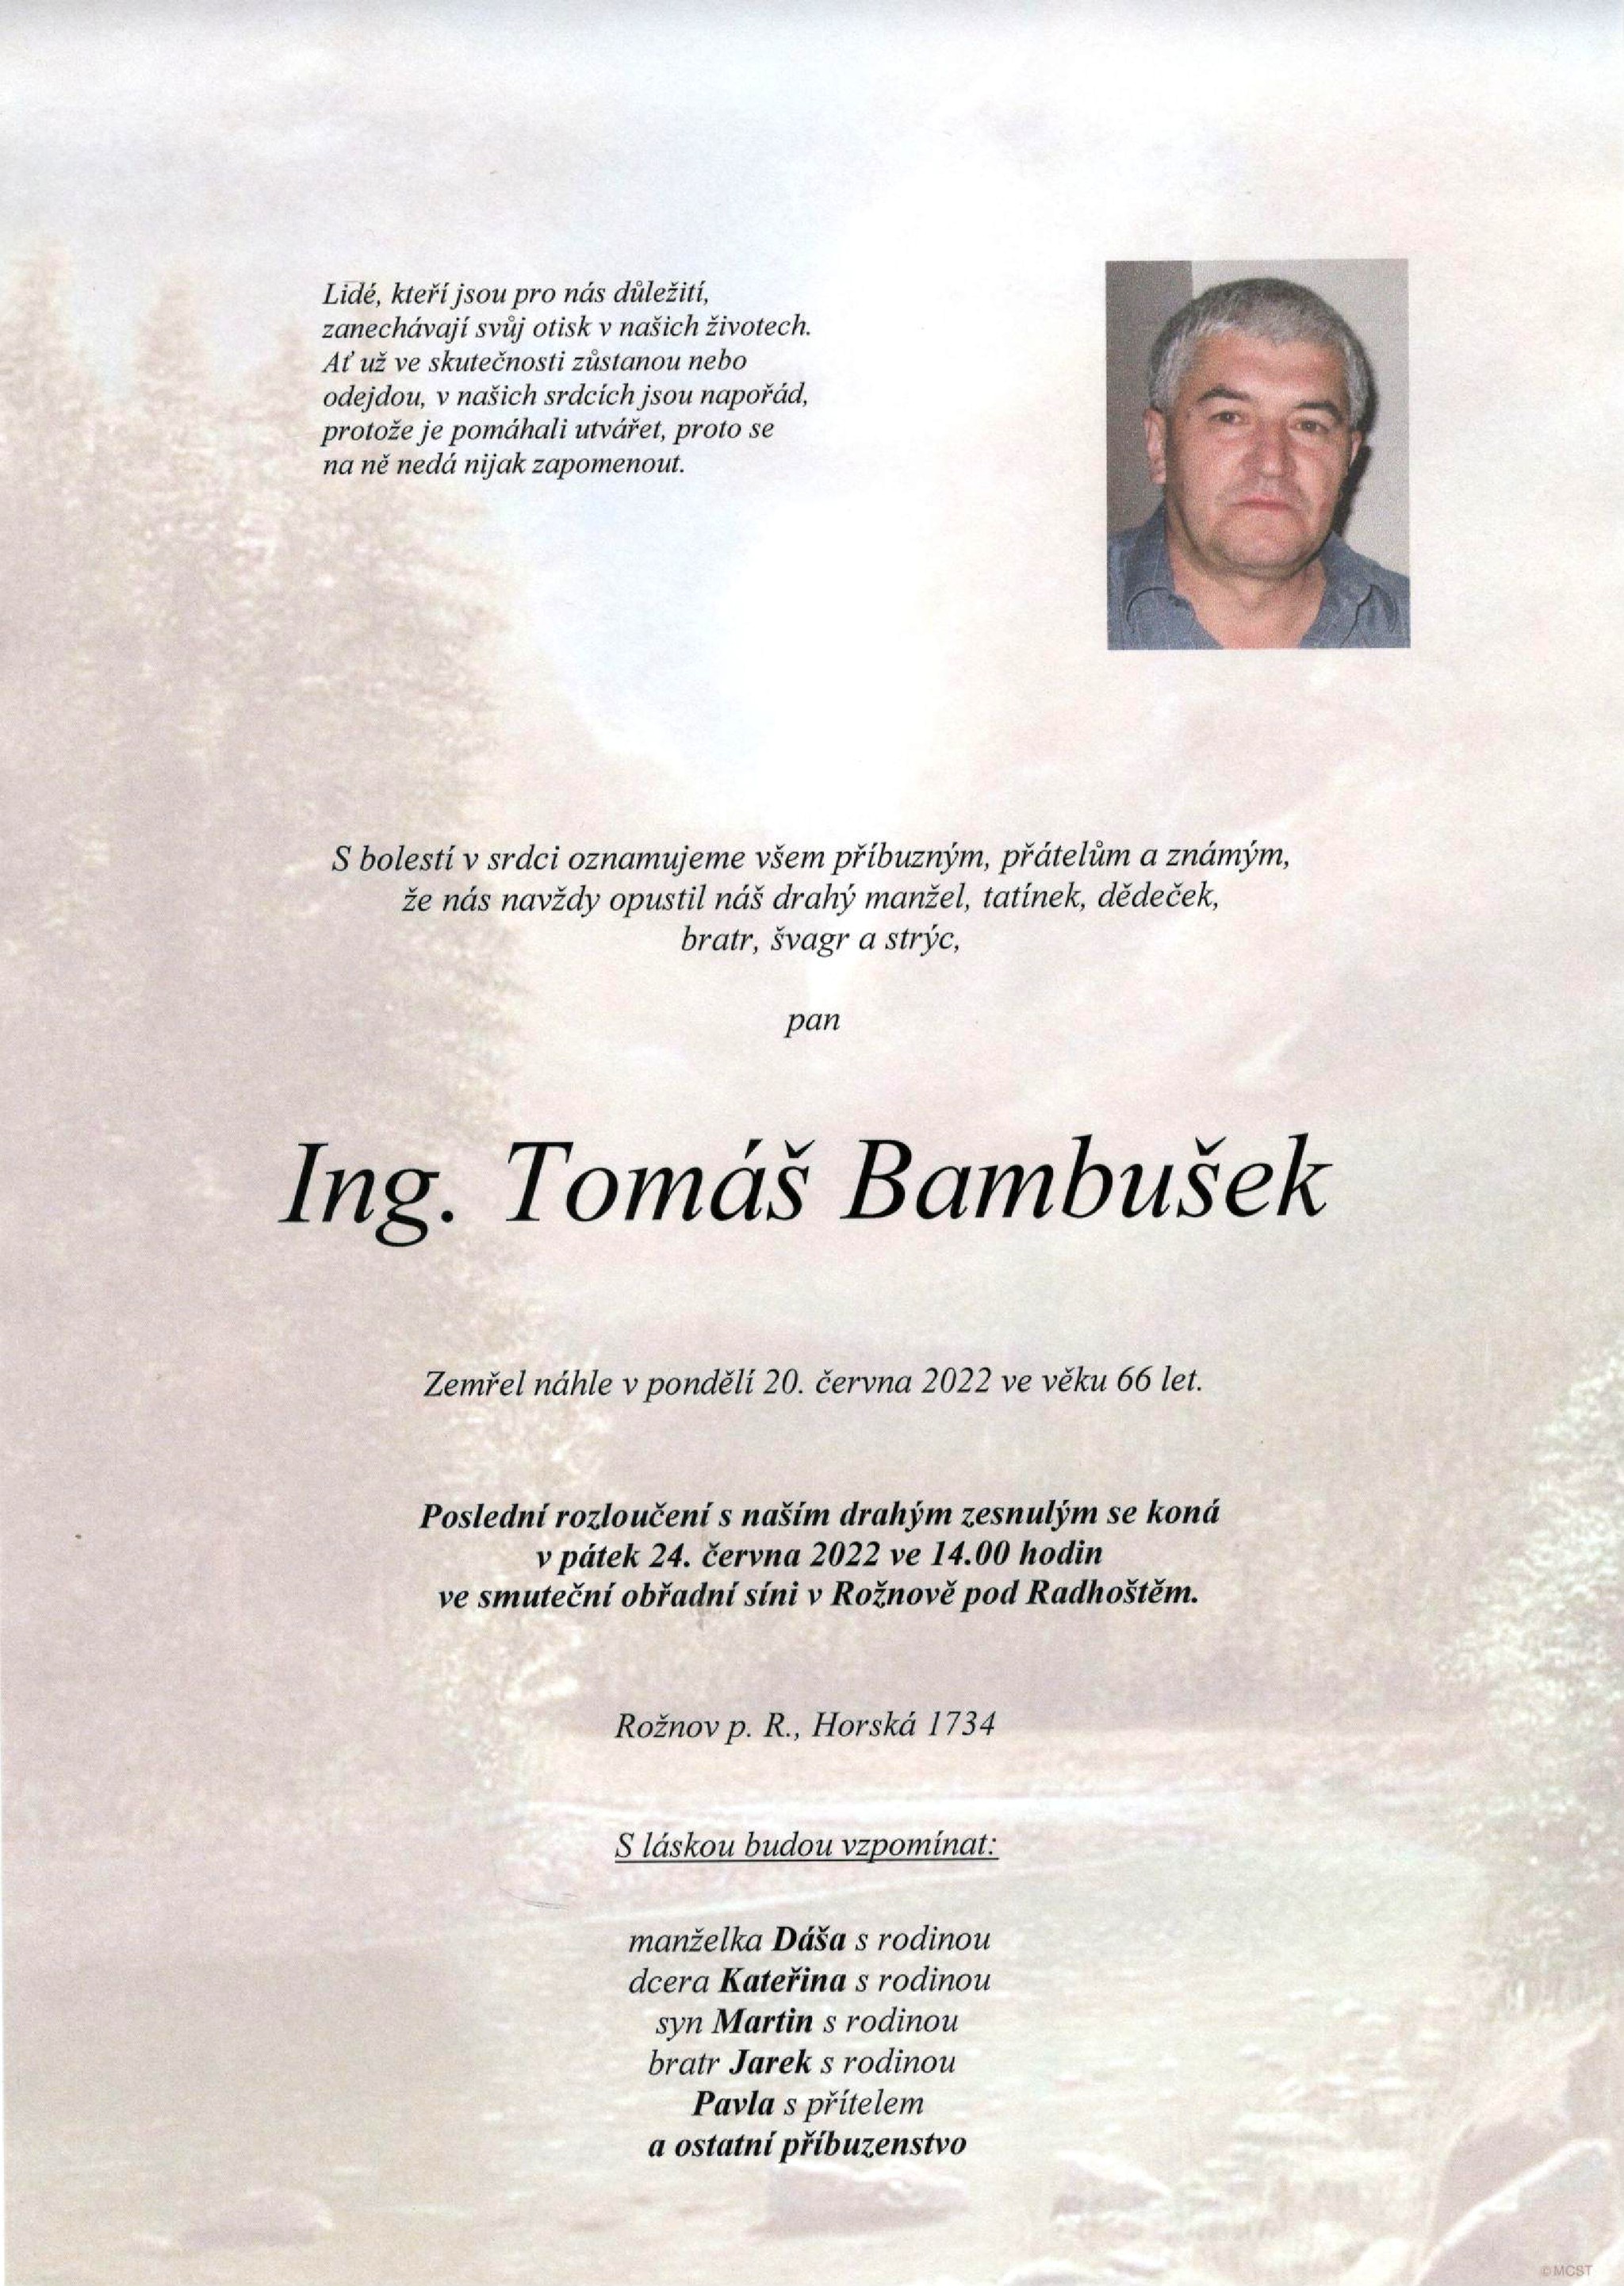 Ing. Tomáš Bambušek